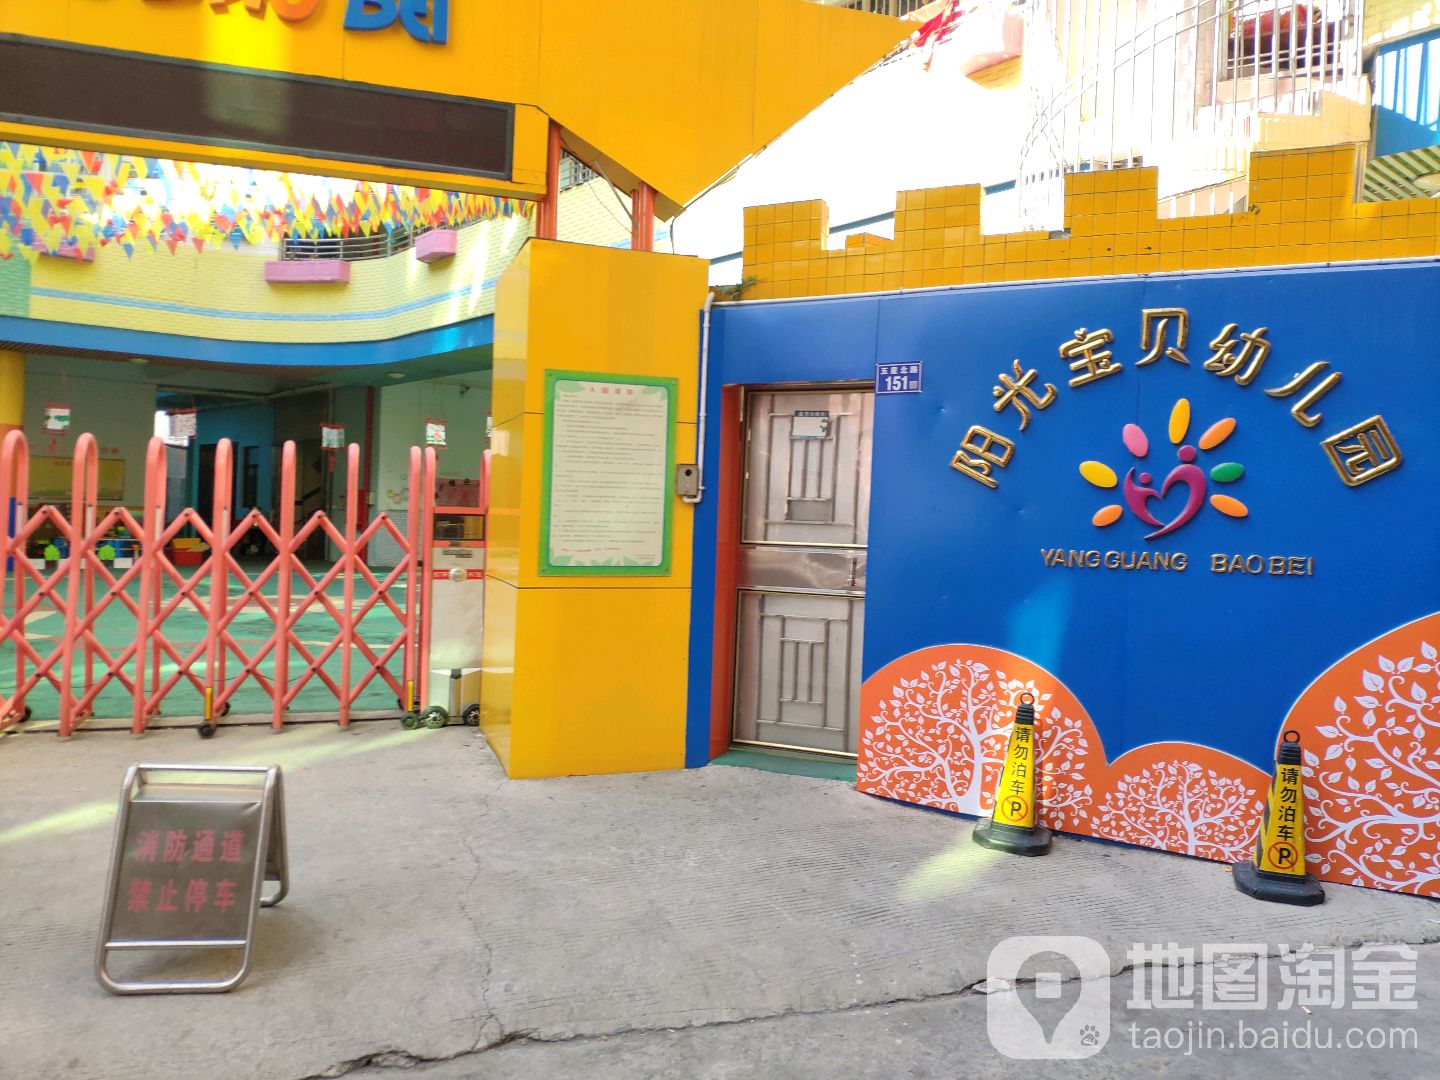 晋江市阳光宝贝幼儿园的图片